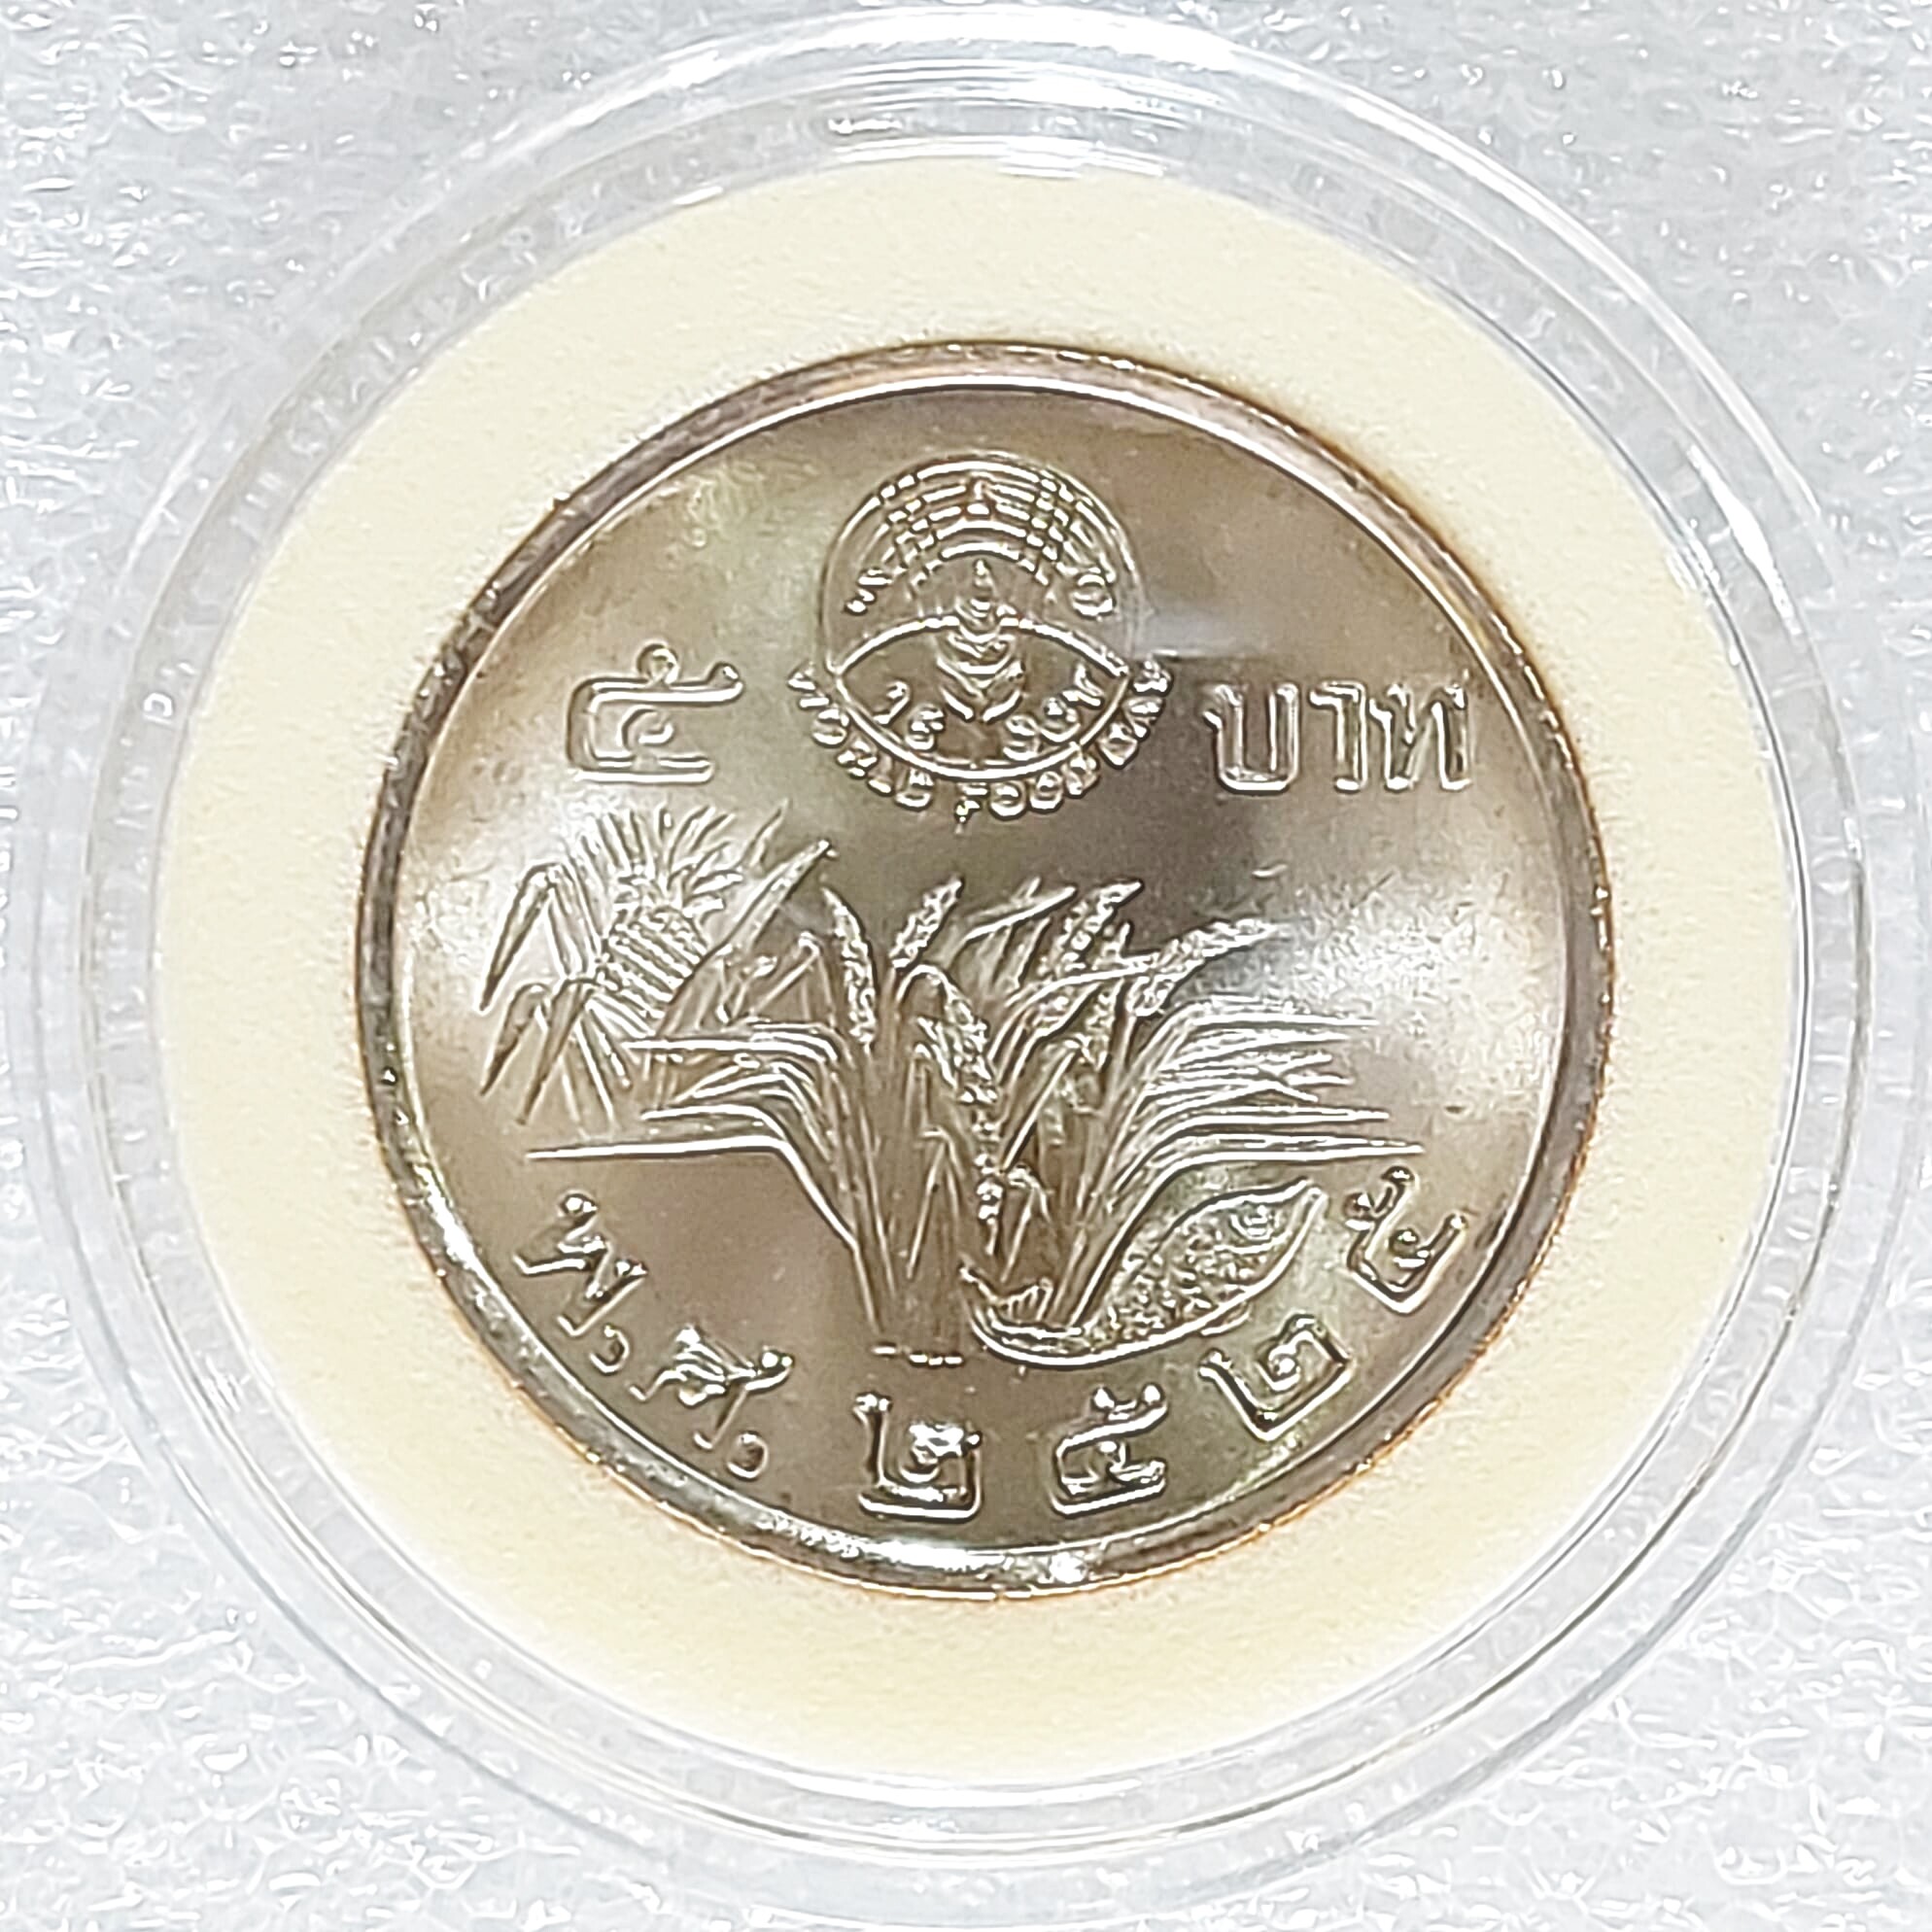 เหรียญ5บาท#เหรียญกษาปณ์ที่ระลึกวันอาหารโลก ปี 2525#รัชกาลที่9 พ.ศ.2525  ไม่ผ่านการใช้ Unc เหรียญสวยวิ้งๆครับ พร้อมตลับอะคริลิคอย่างดีจากกรมฯ -  เหรียญแท้กษาปณ์ไทย - Thaipick